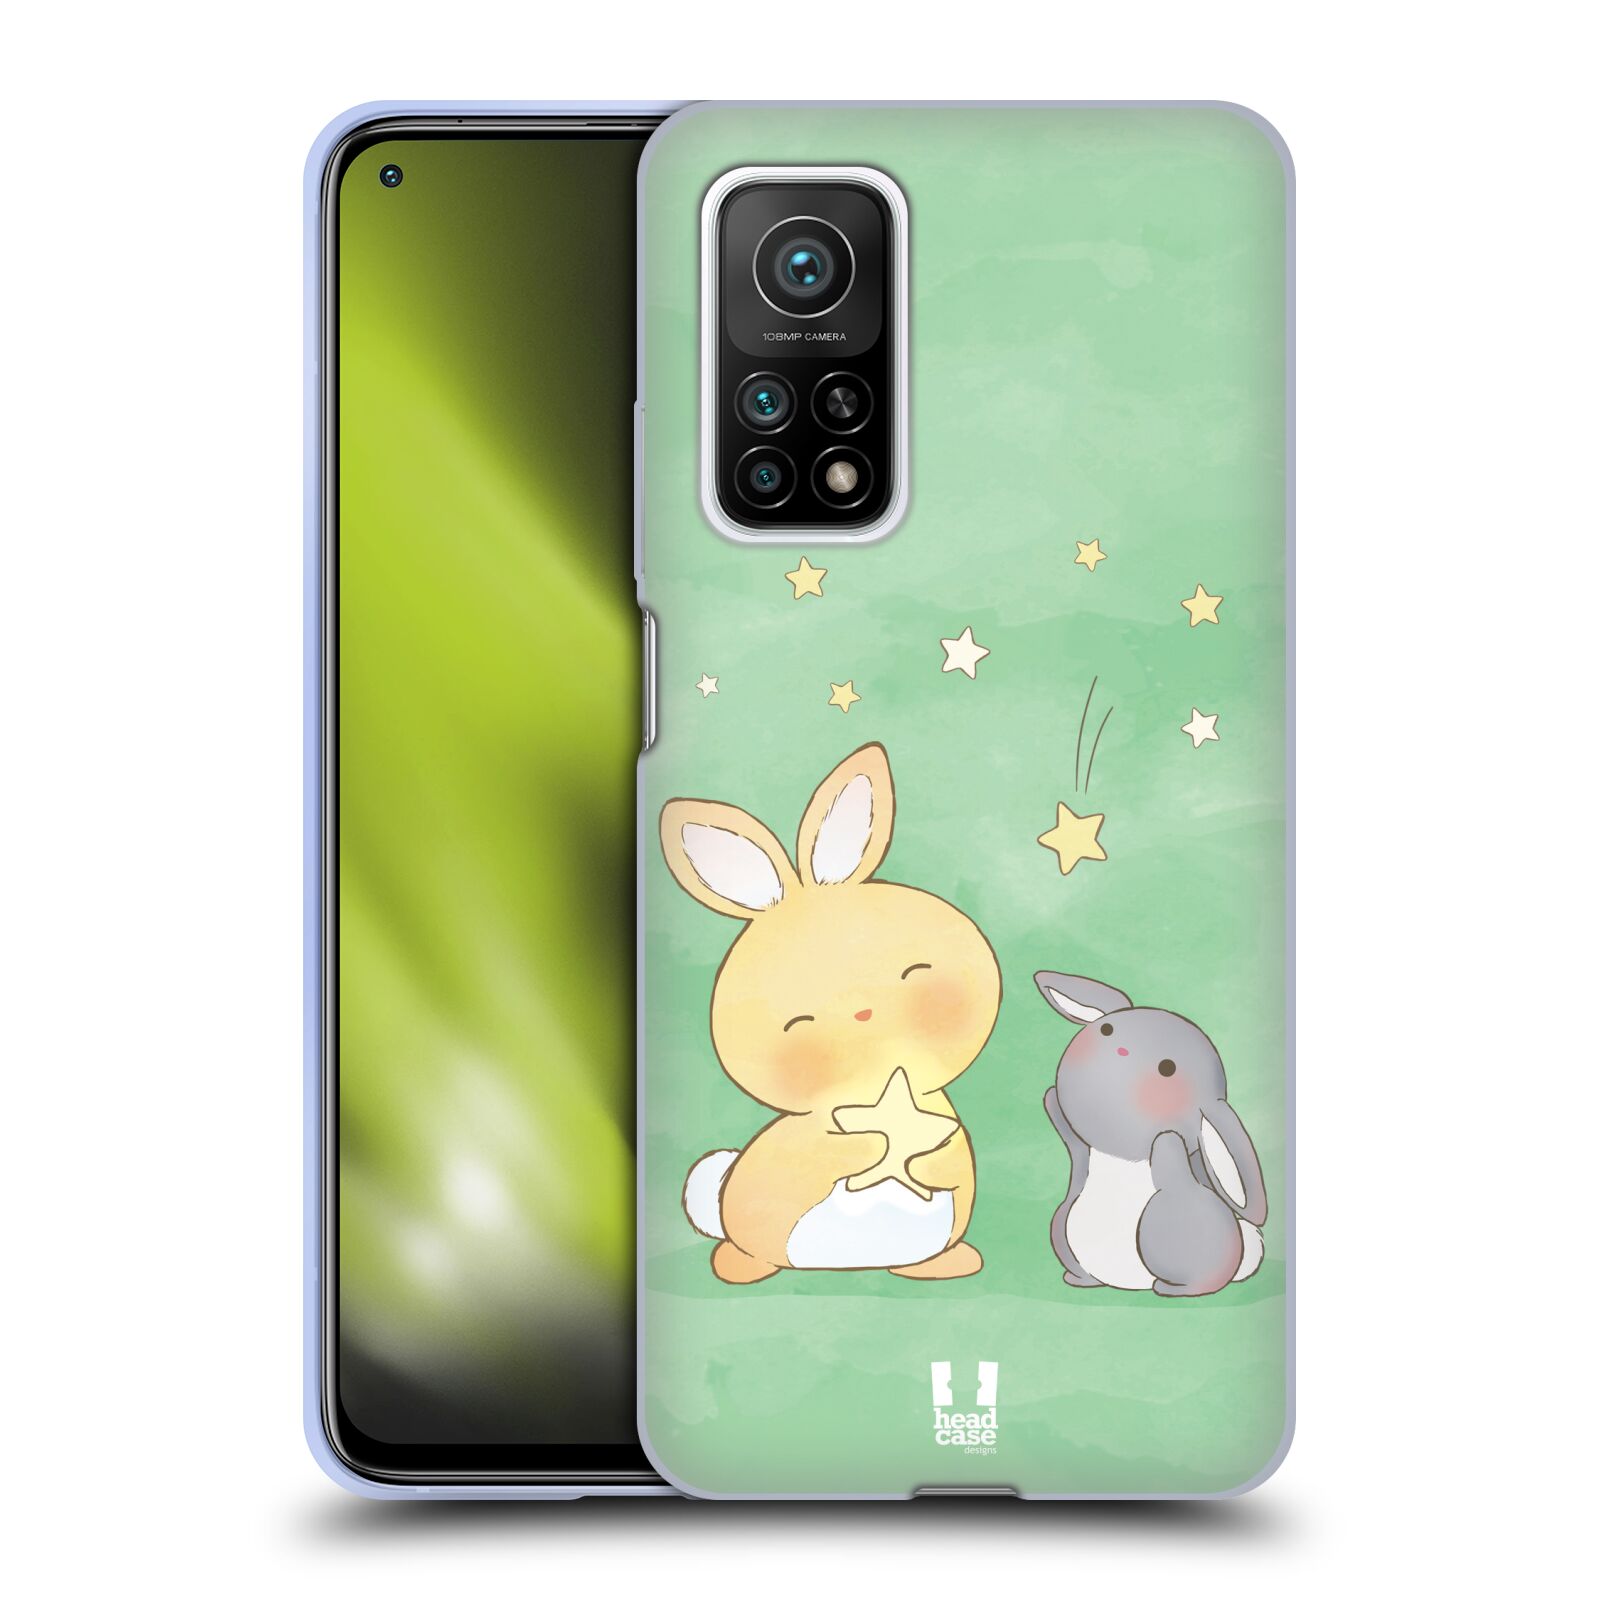 Plastový obal HEAD CASE na mobil Xiaomi Mi 10T a Mi 10T PRO vzor králíček a hvězdy zelená